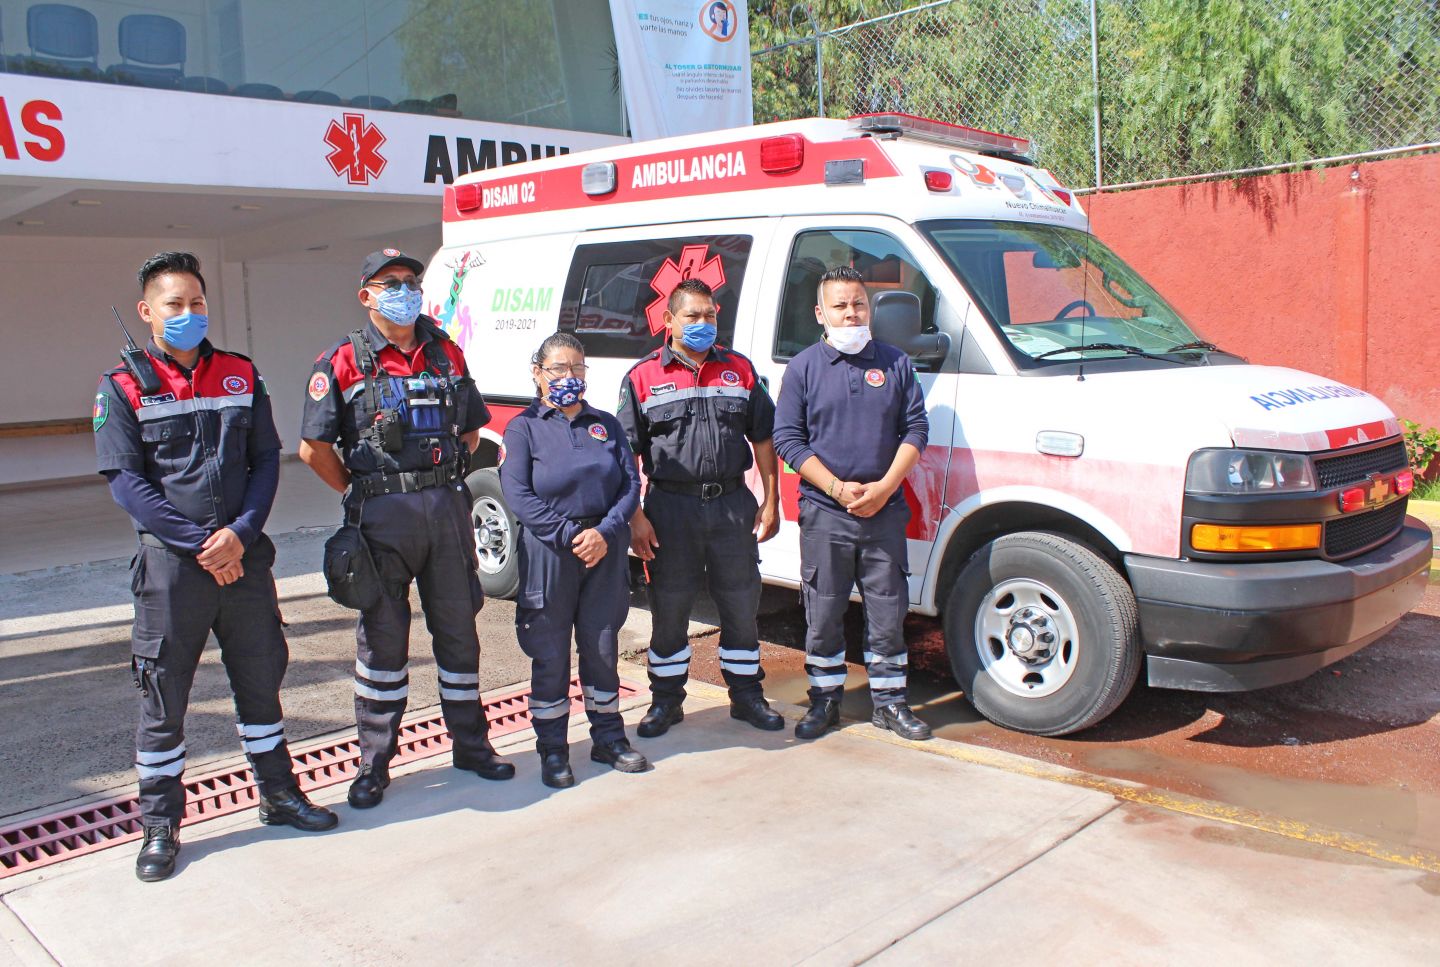 El gobierno de Chimalhuacán equipa ambulancias de la DISAM para atender pacientes con COVID-19